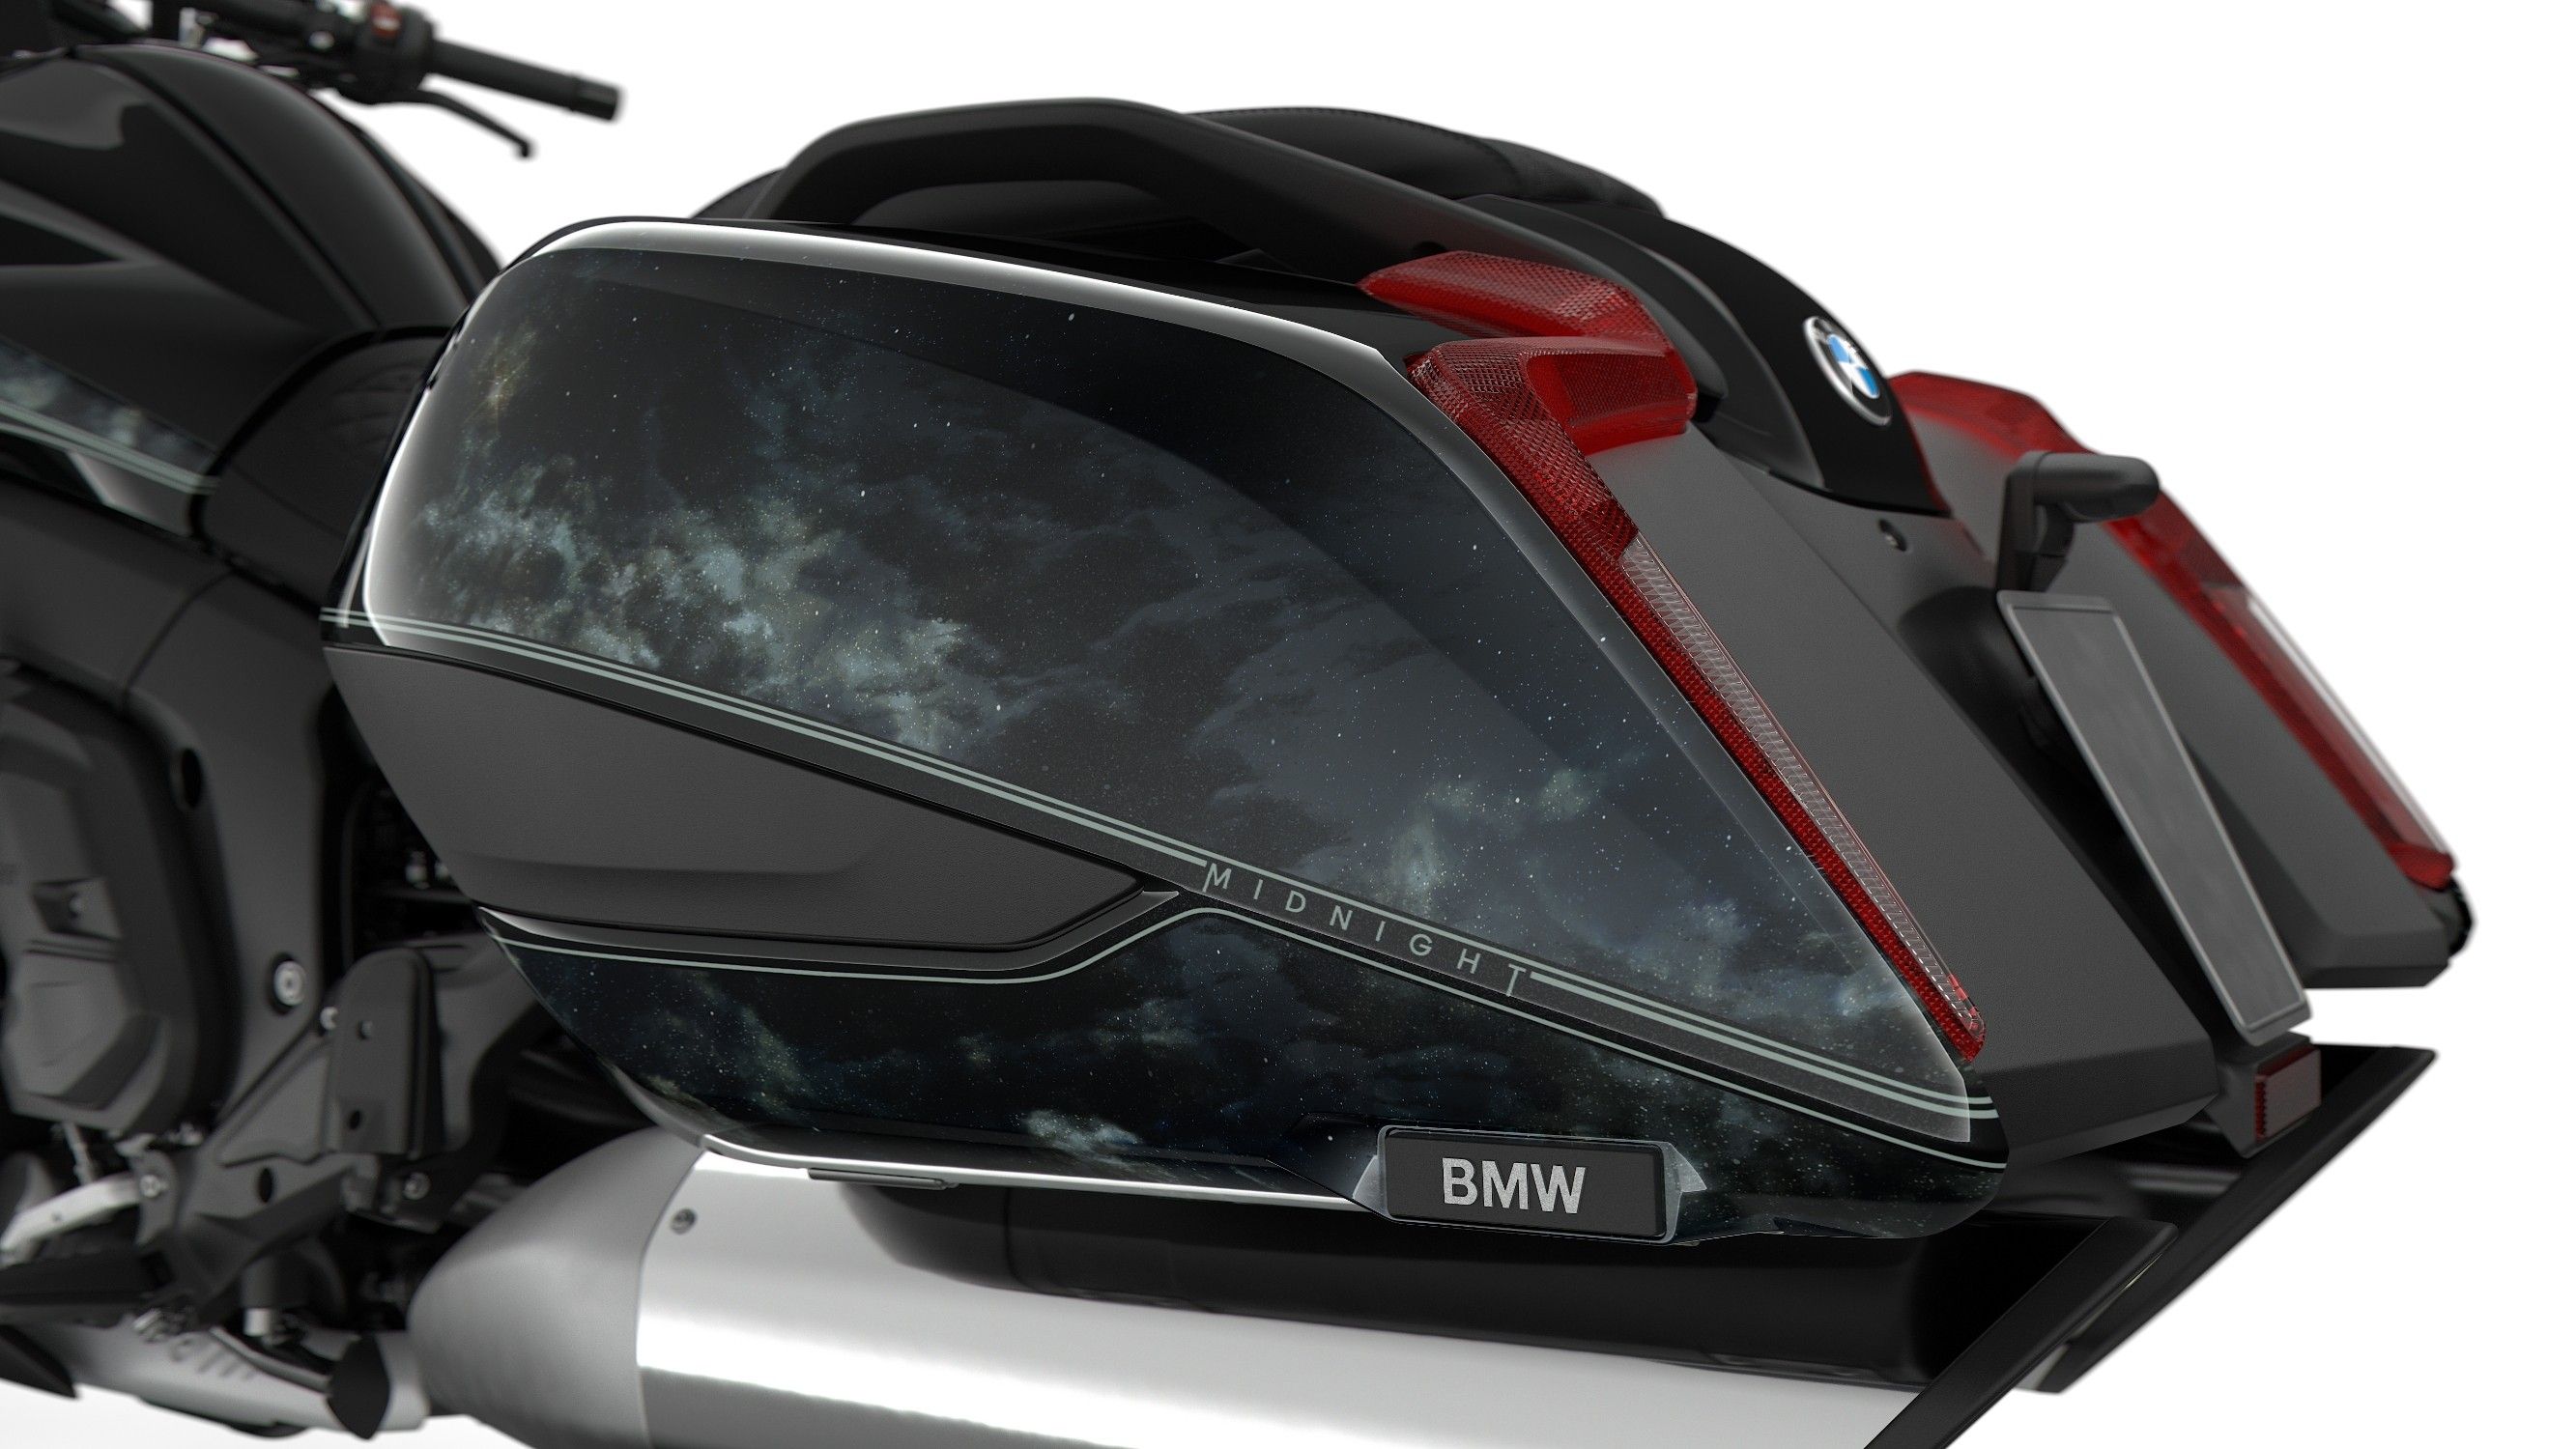 2022 BMW K 1600 B